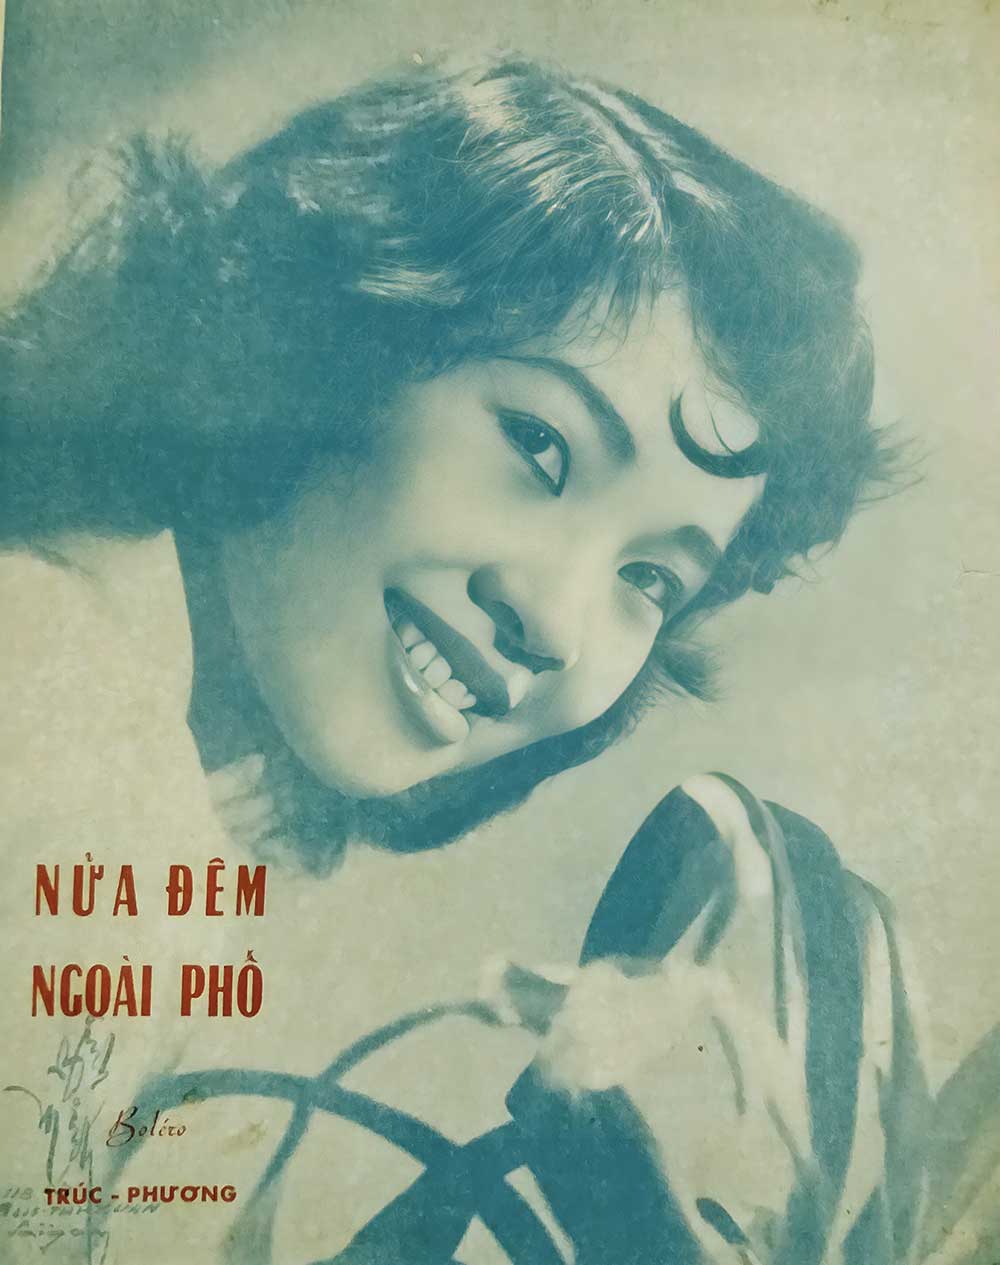 Nói về sự nghiệp của ca sĩ Thanh Thúy cũng không thể không nhắc đến ca khúc "Nửa Đêm Ngoài Phố".